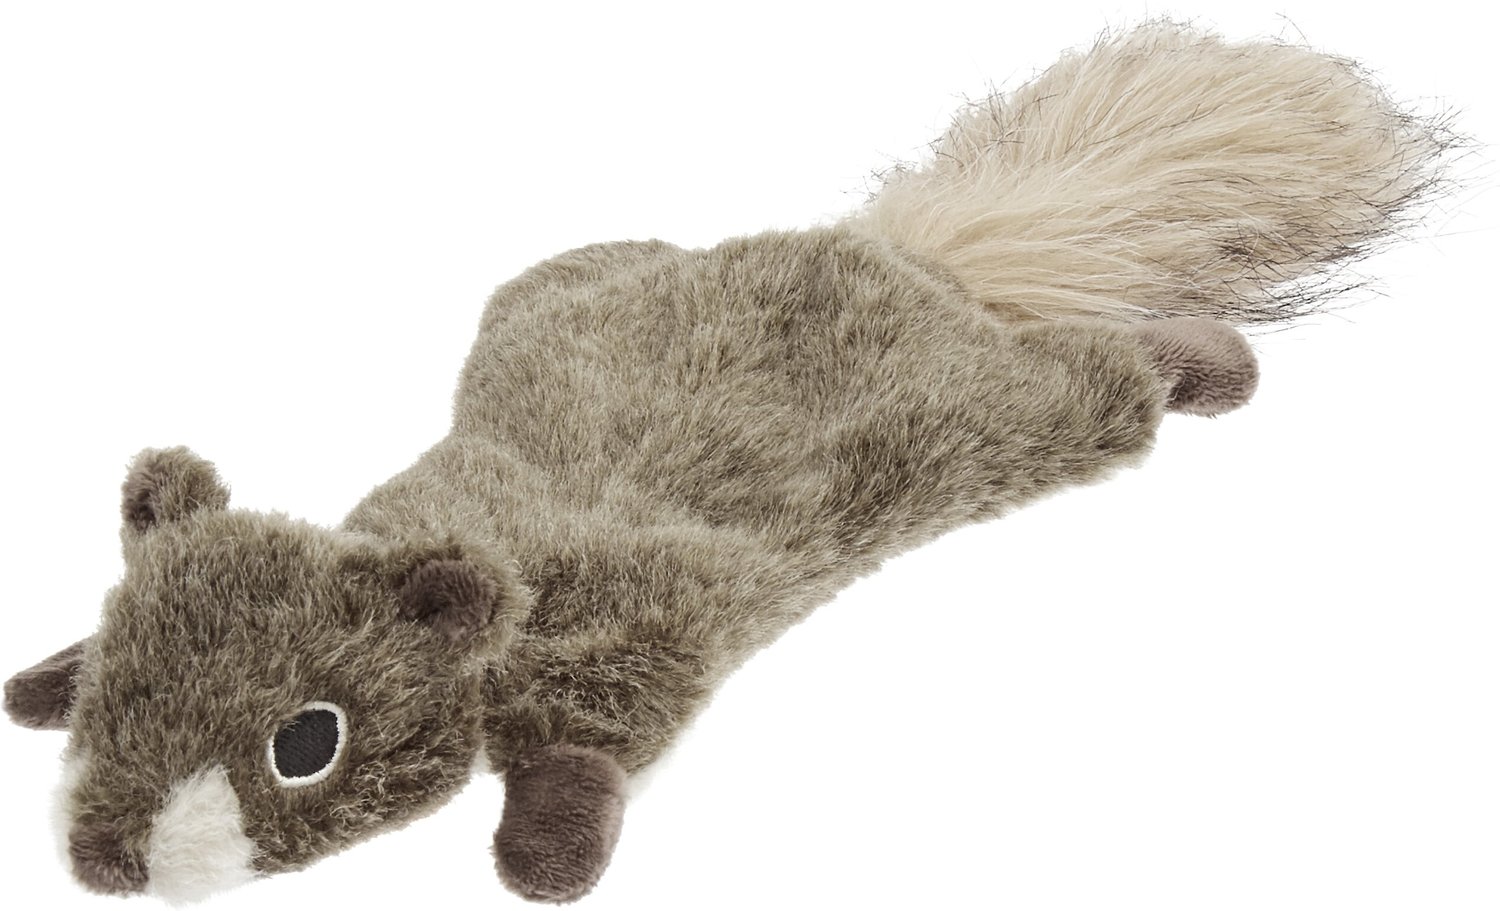 stuffed squirrel dog toy